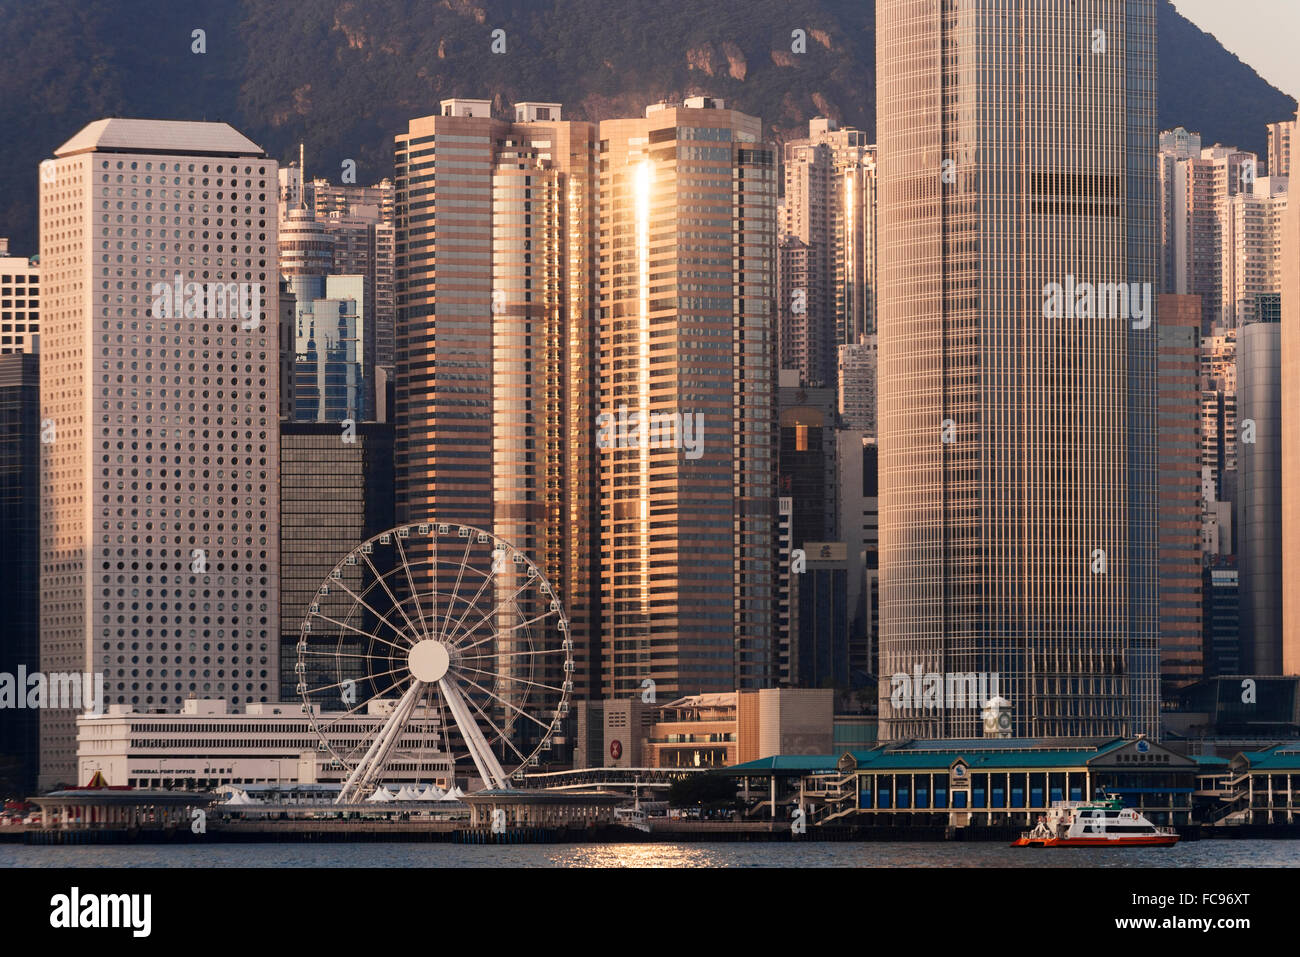 Dawn over Hong Kong Central skyline, Avenue of Stars, Tsim Sha Tsui Waterfront, Kowloon, Hong Kong, China, Asia Stock Photo